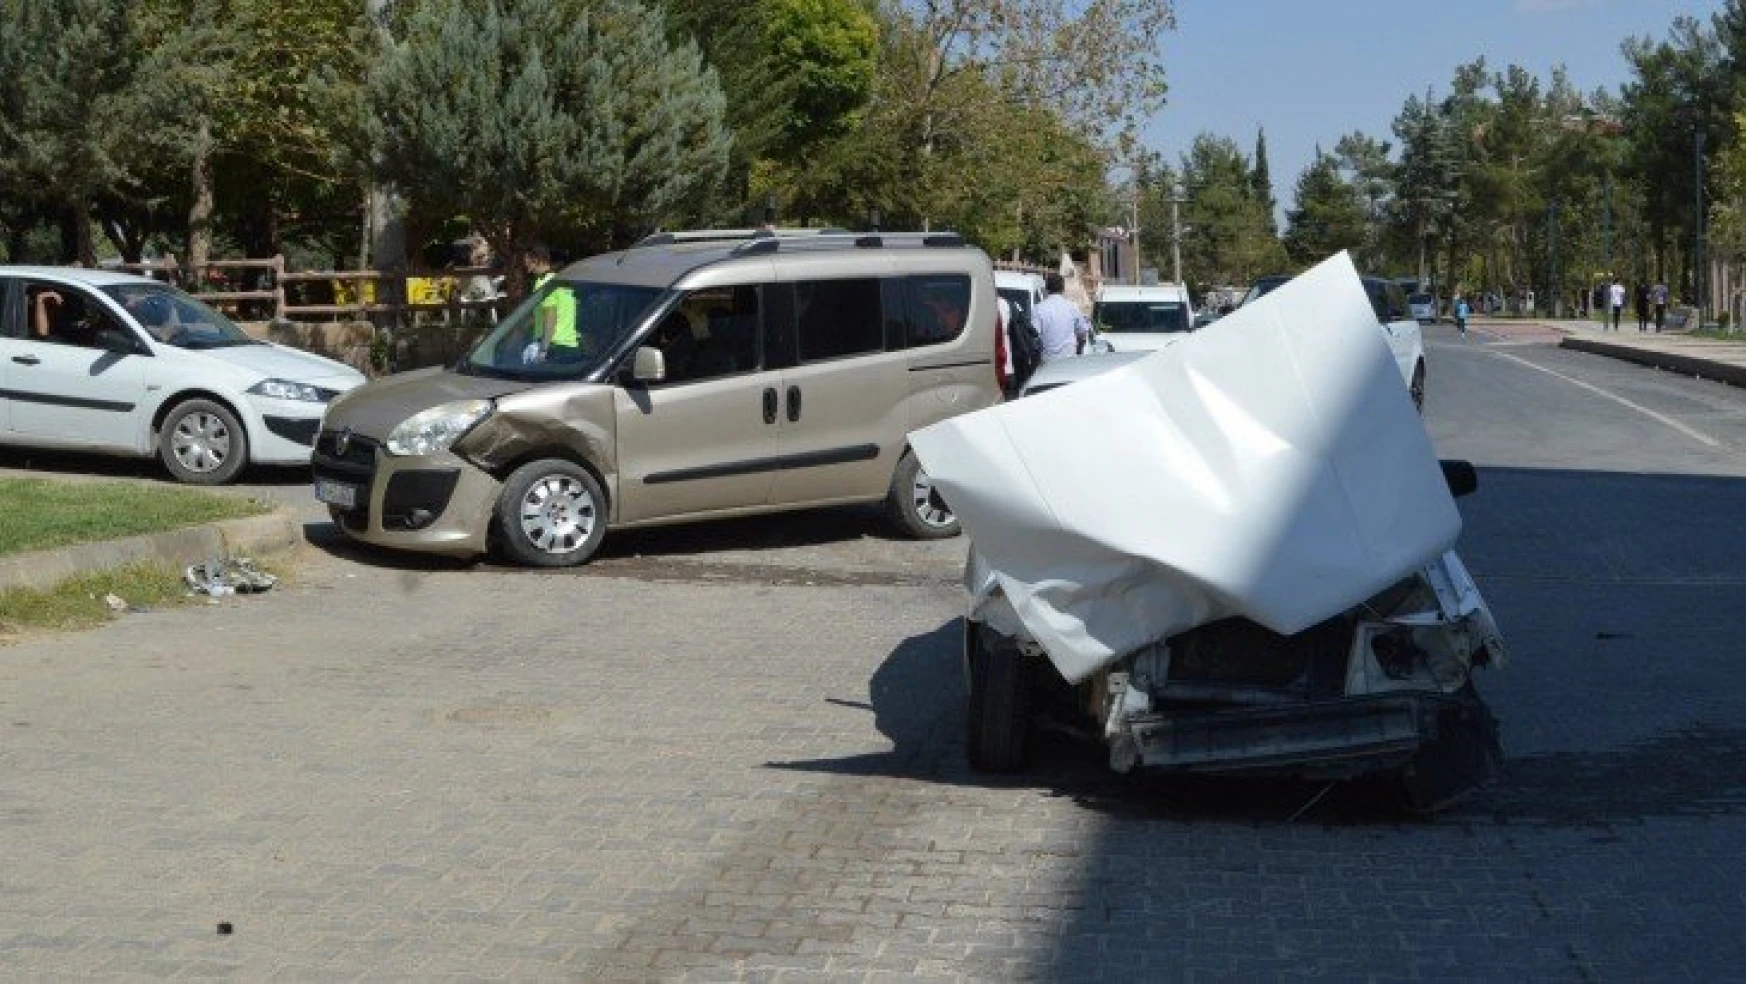 Hafif ticari araç ile otomobil çarpıştı: 3 yaralı